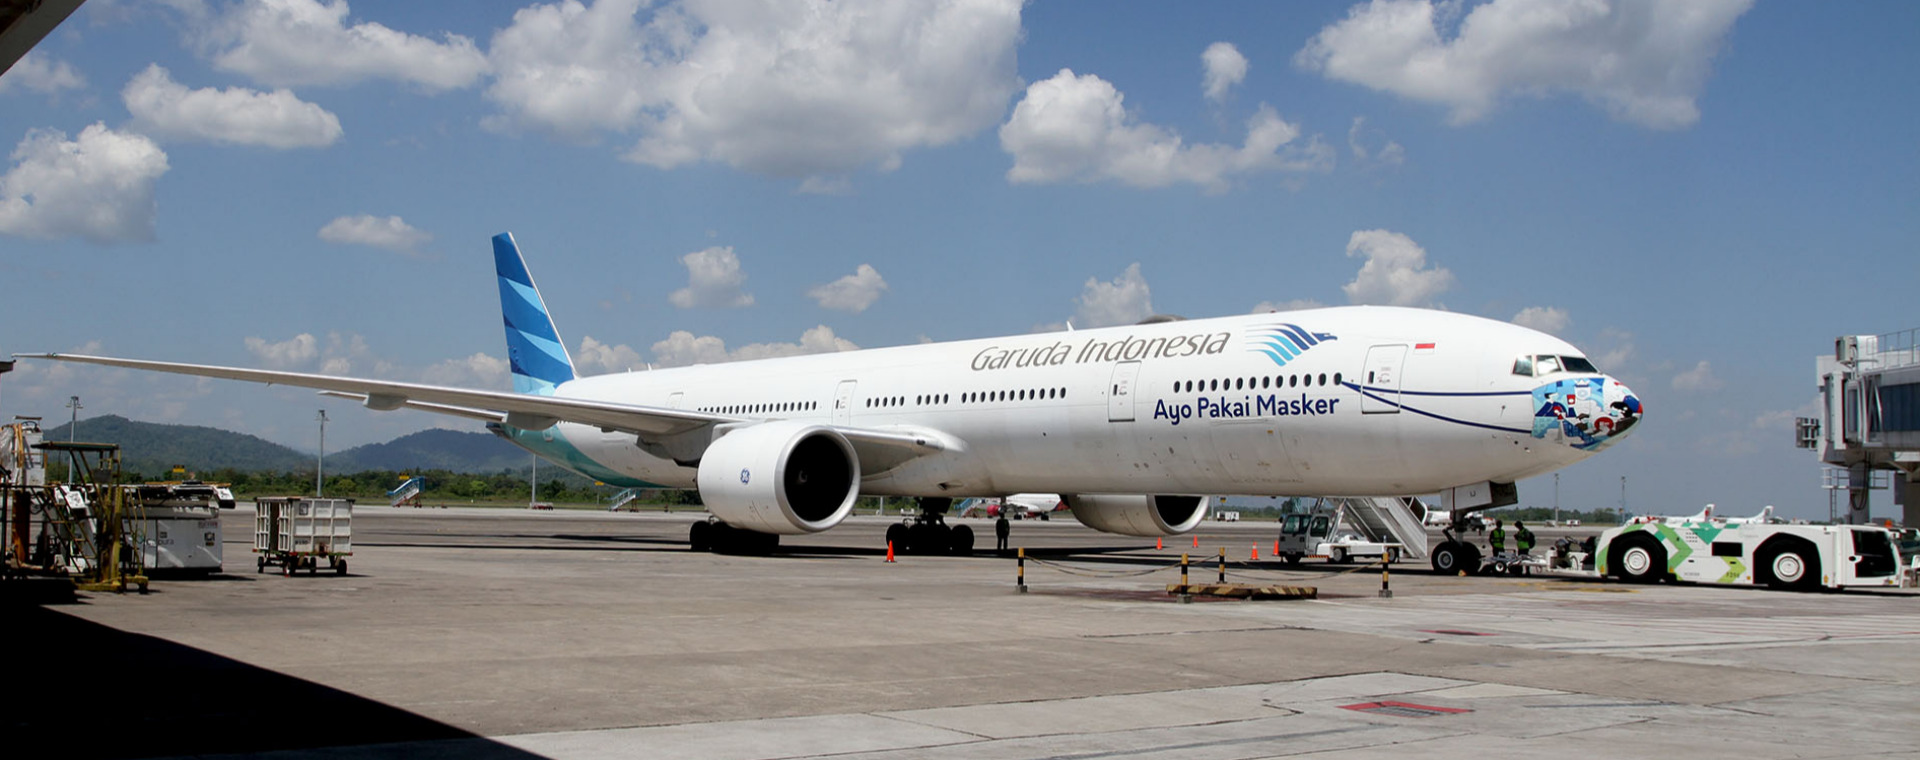  Cara Refund Tiket Pesawat Garuda, Lion Air, dan Batik Air